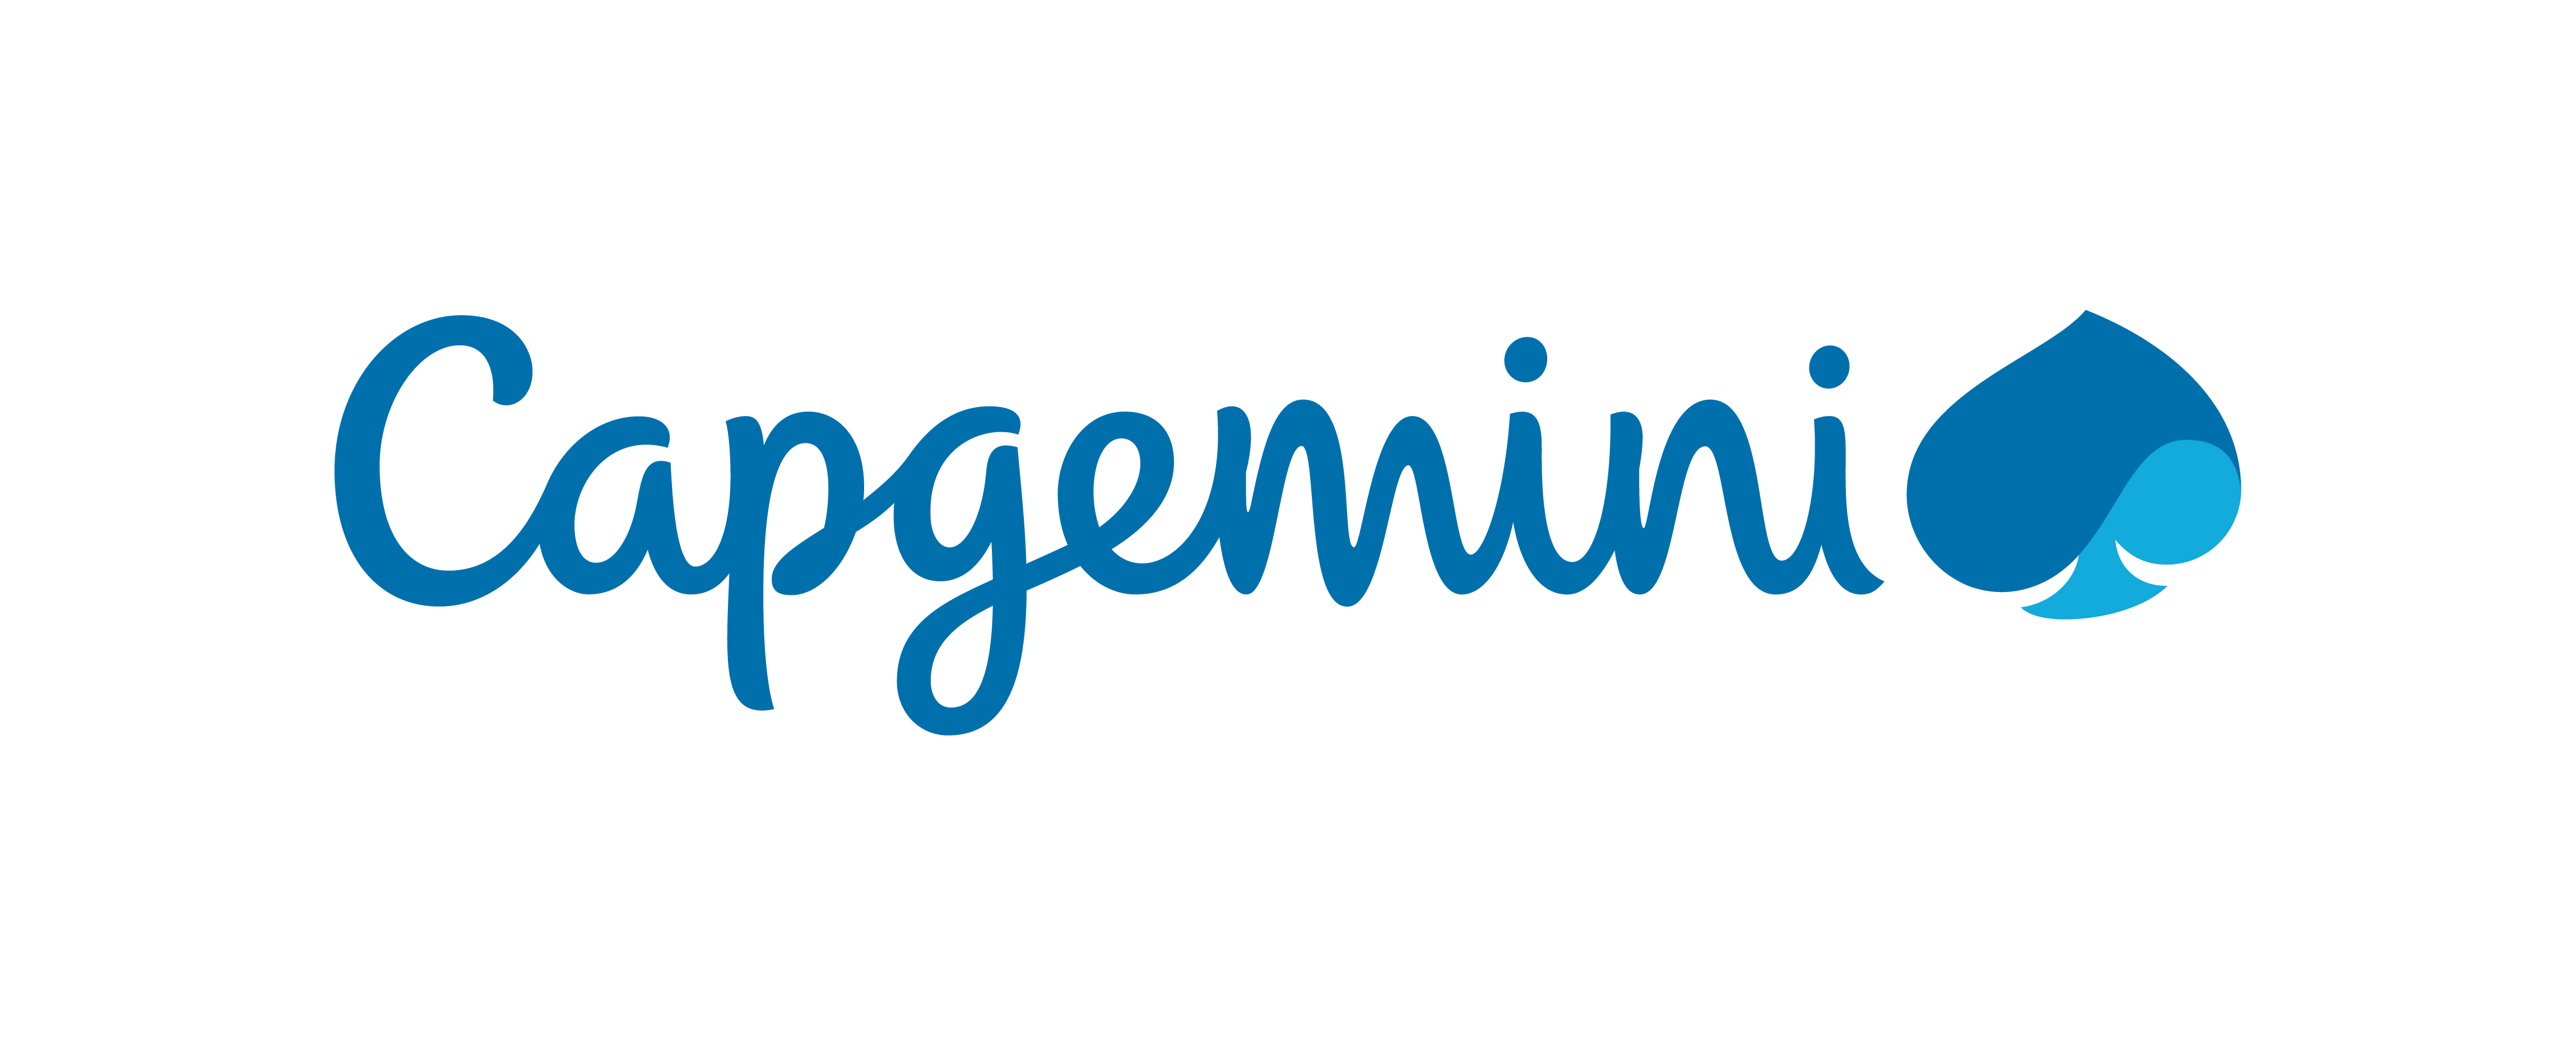 Capgemini Off Campus drive 2021 Registration